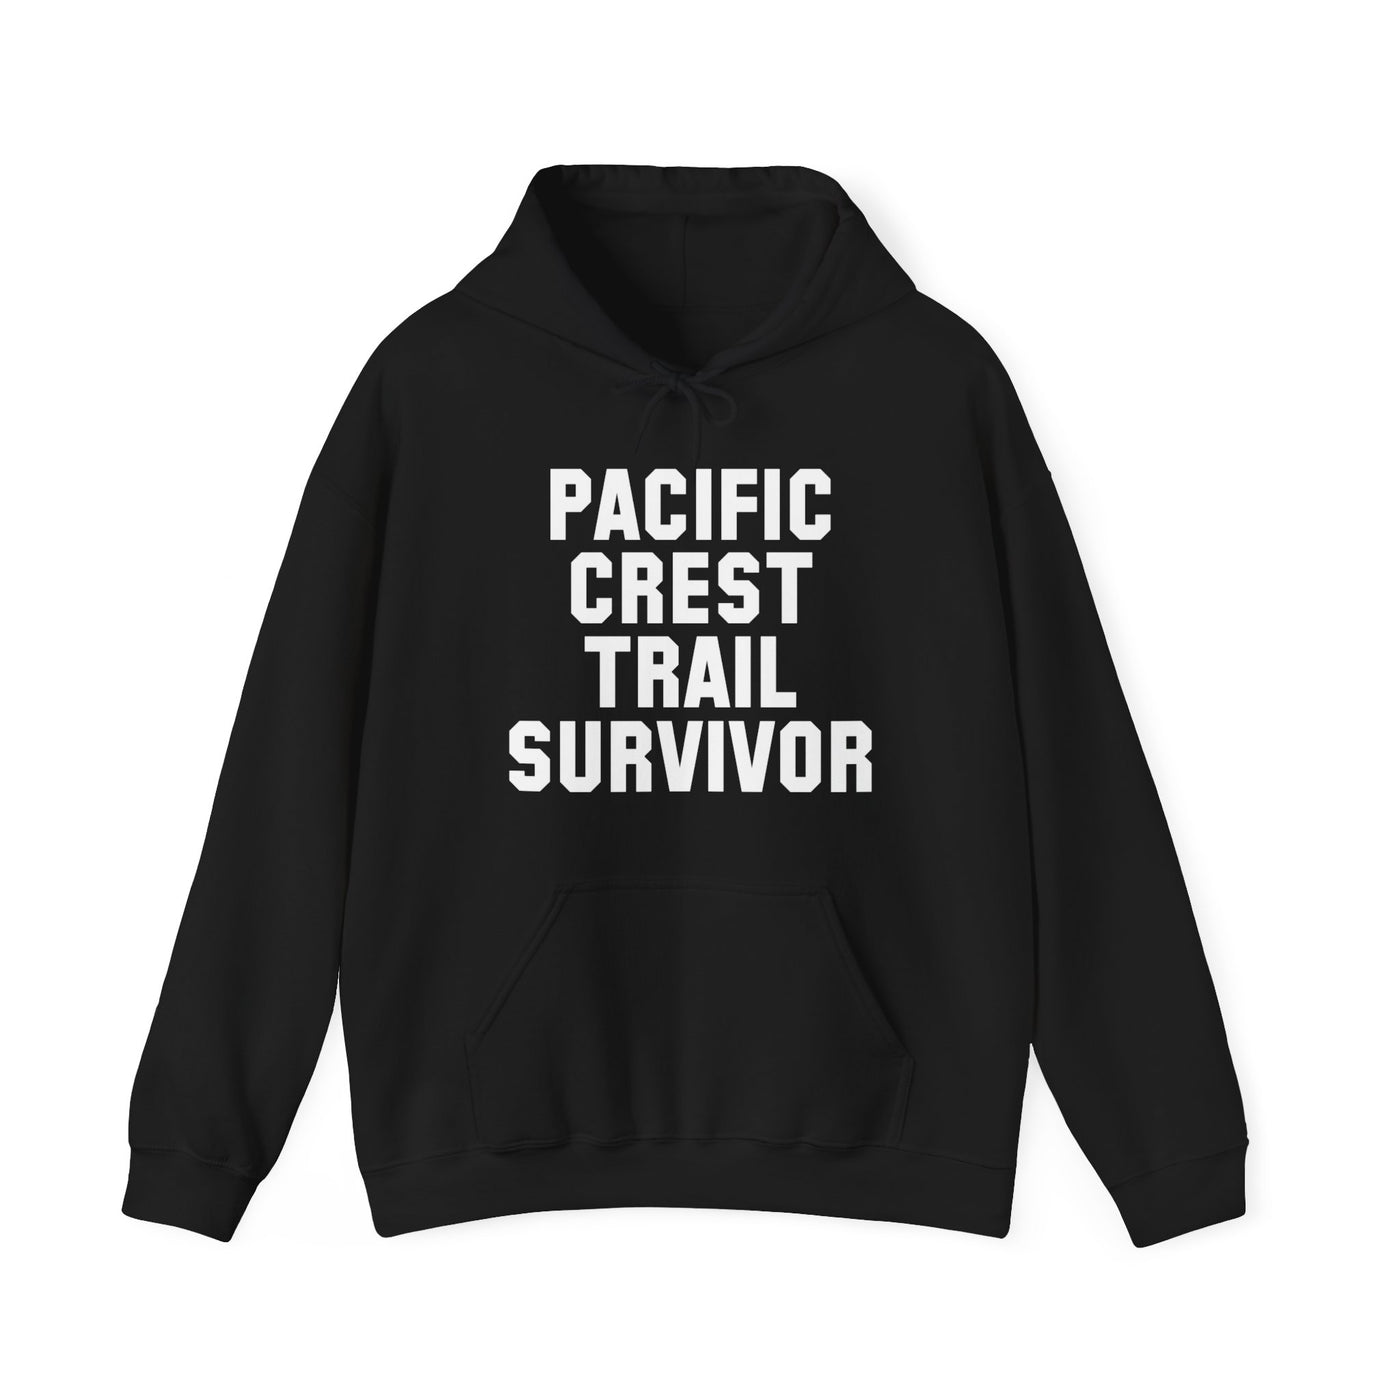 Pacific Crest Trail Survivor Hooded Sweatshirt